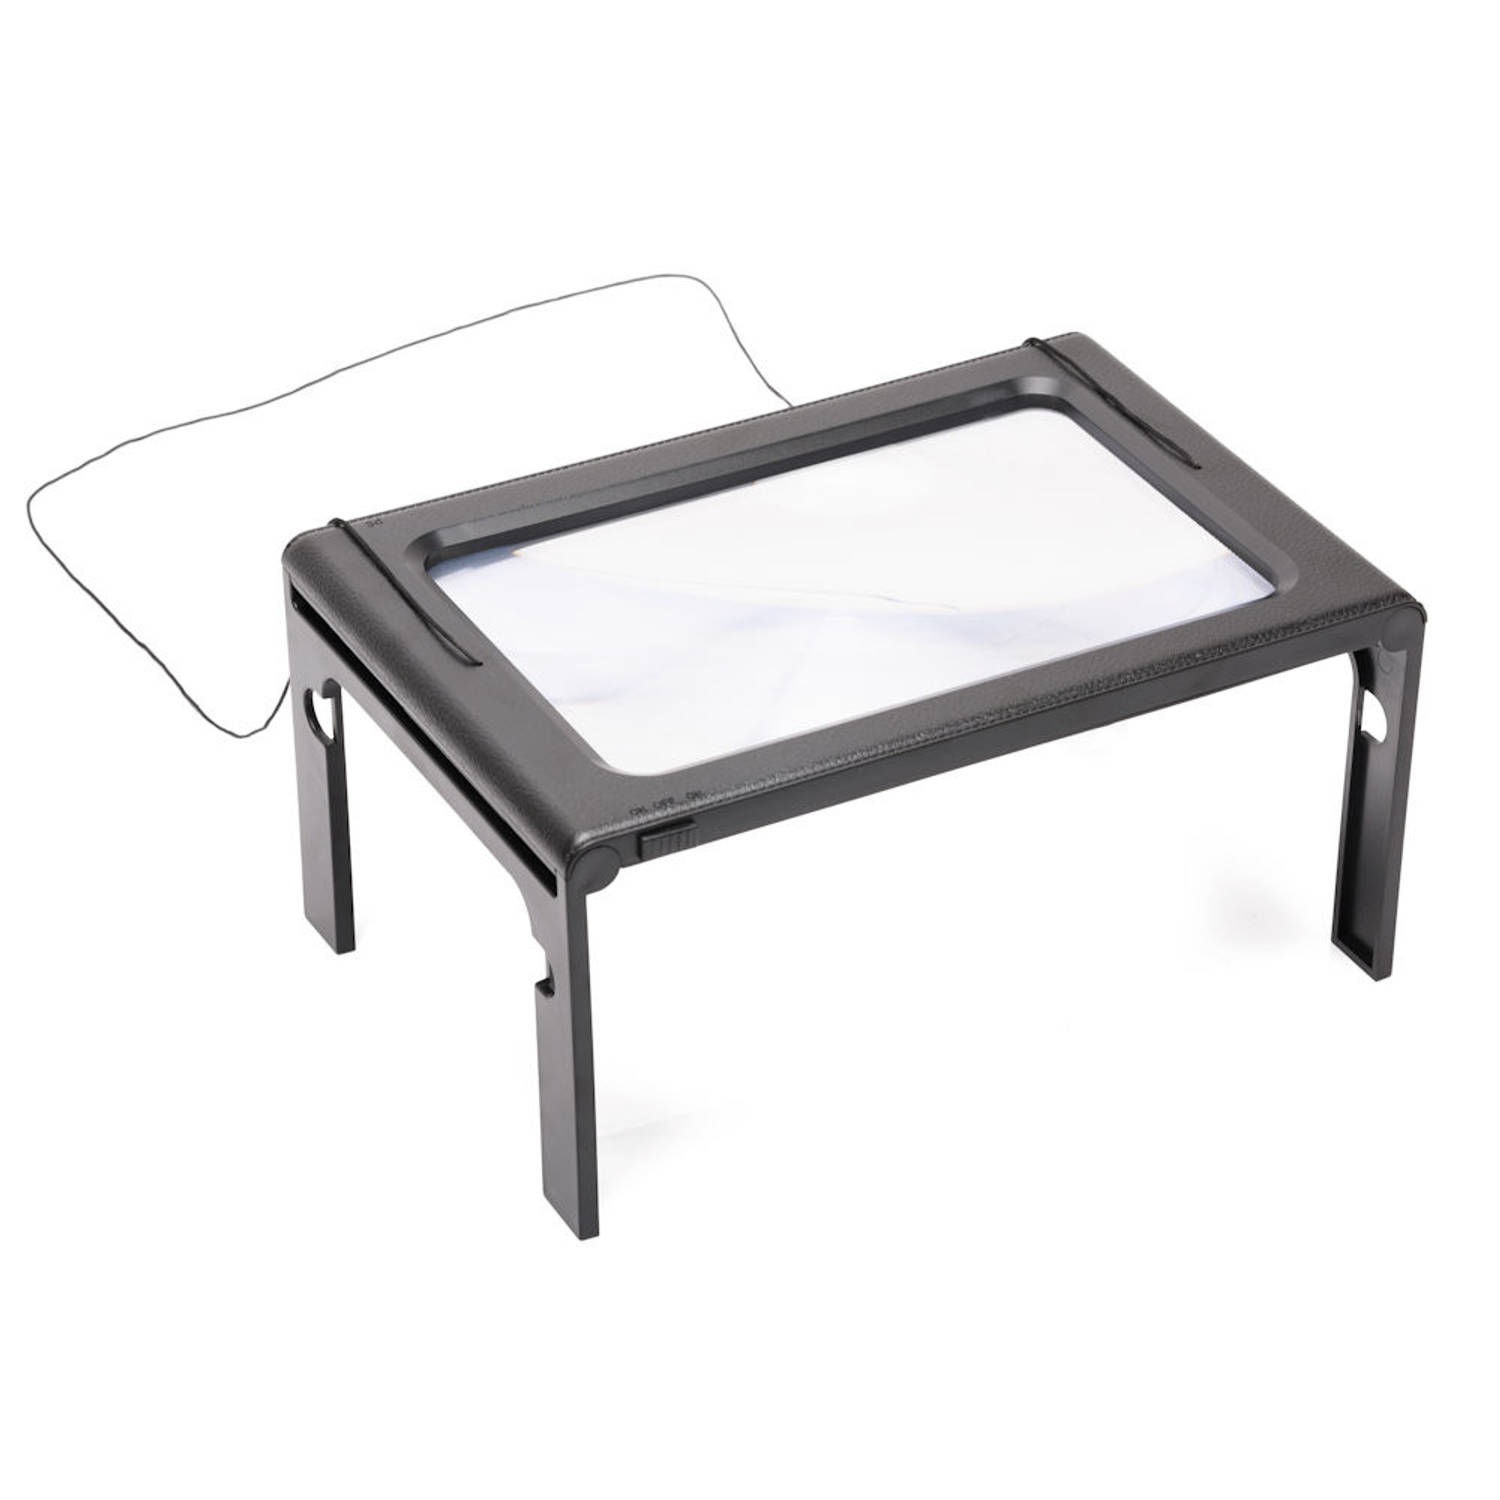 Ik heb een contract gemaakt Misschien dubbele Tafel Loep - Vergrootglas met LED verlichting - Loep 2.5x - | Blokker